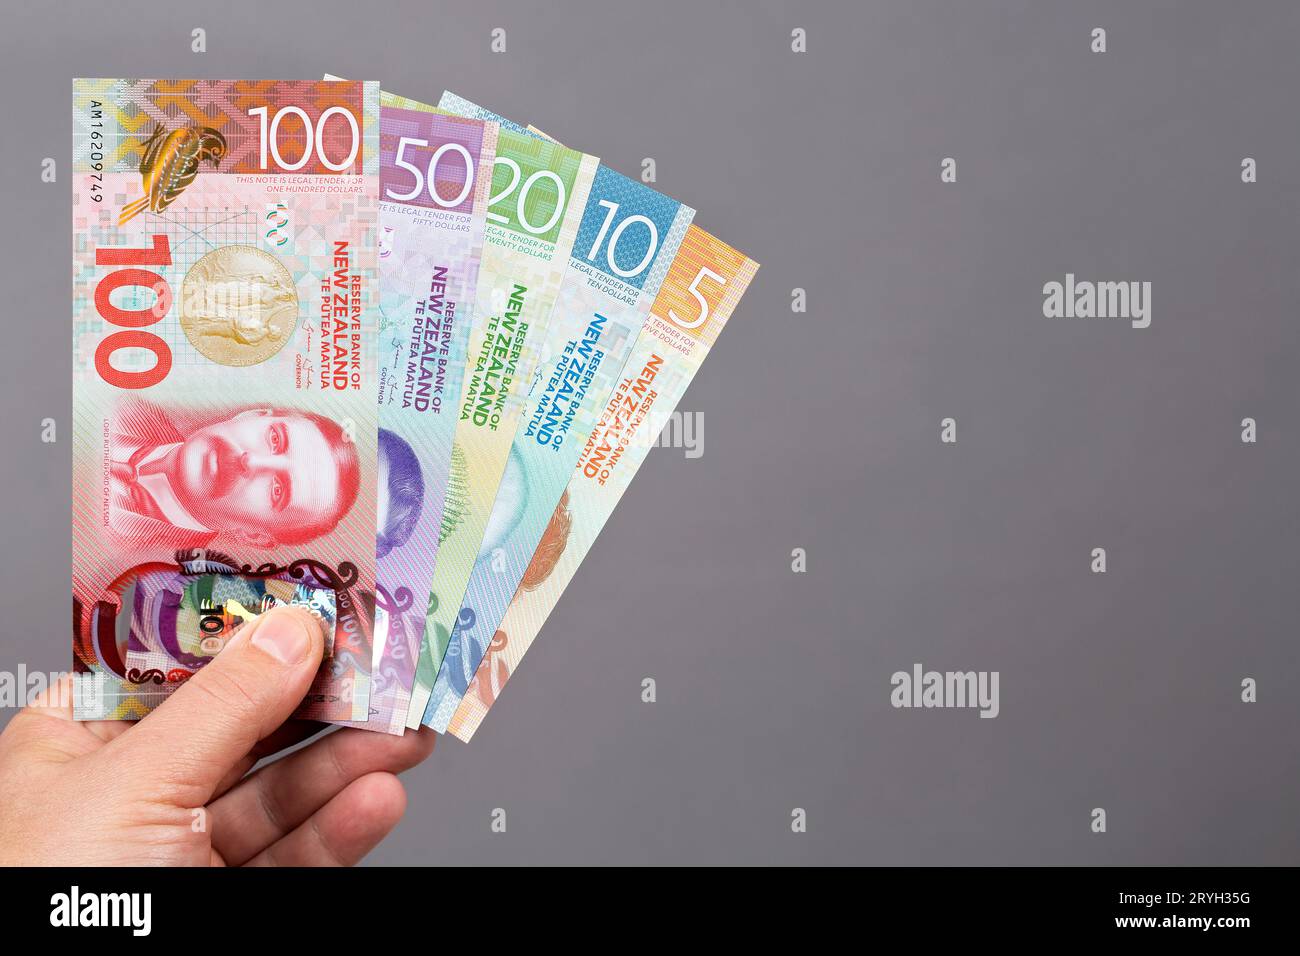 Neuseeländisches Geld - neue Banknotenserie in der Hand Stockfoto